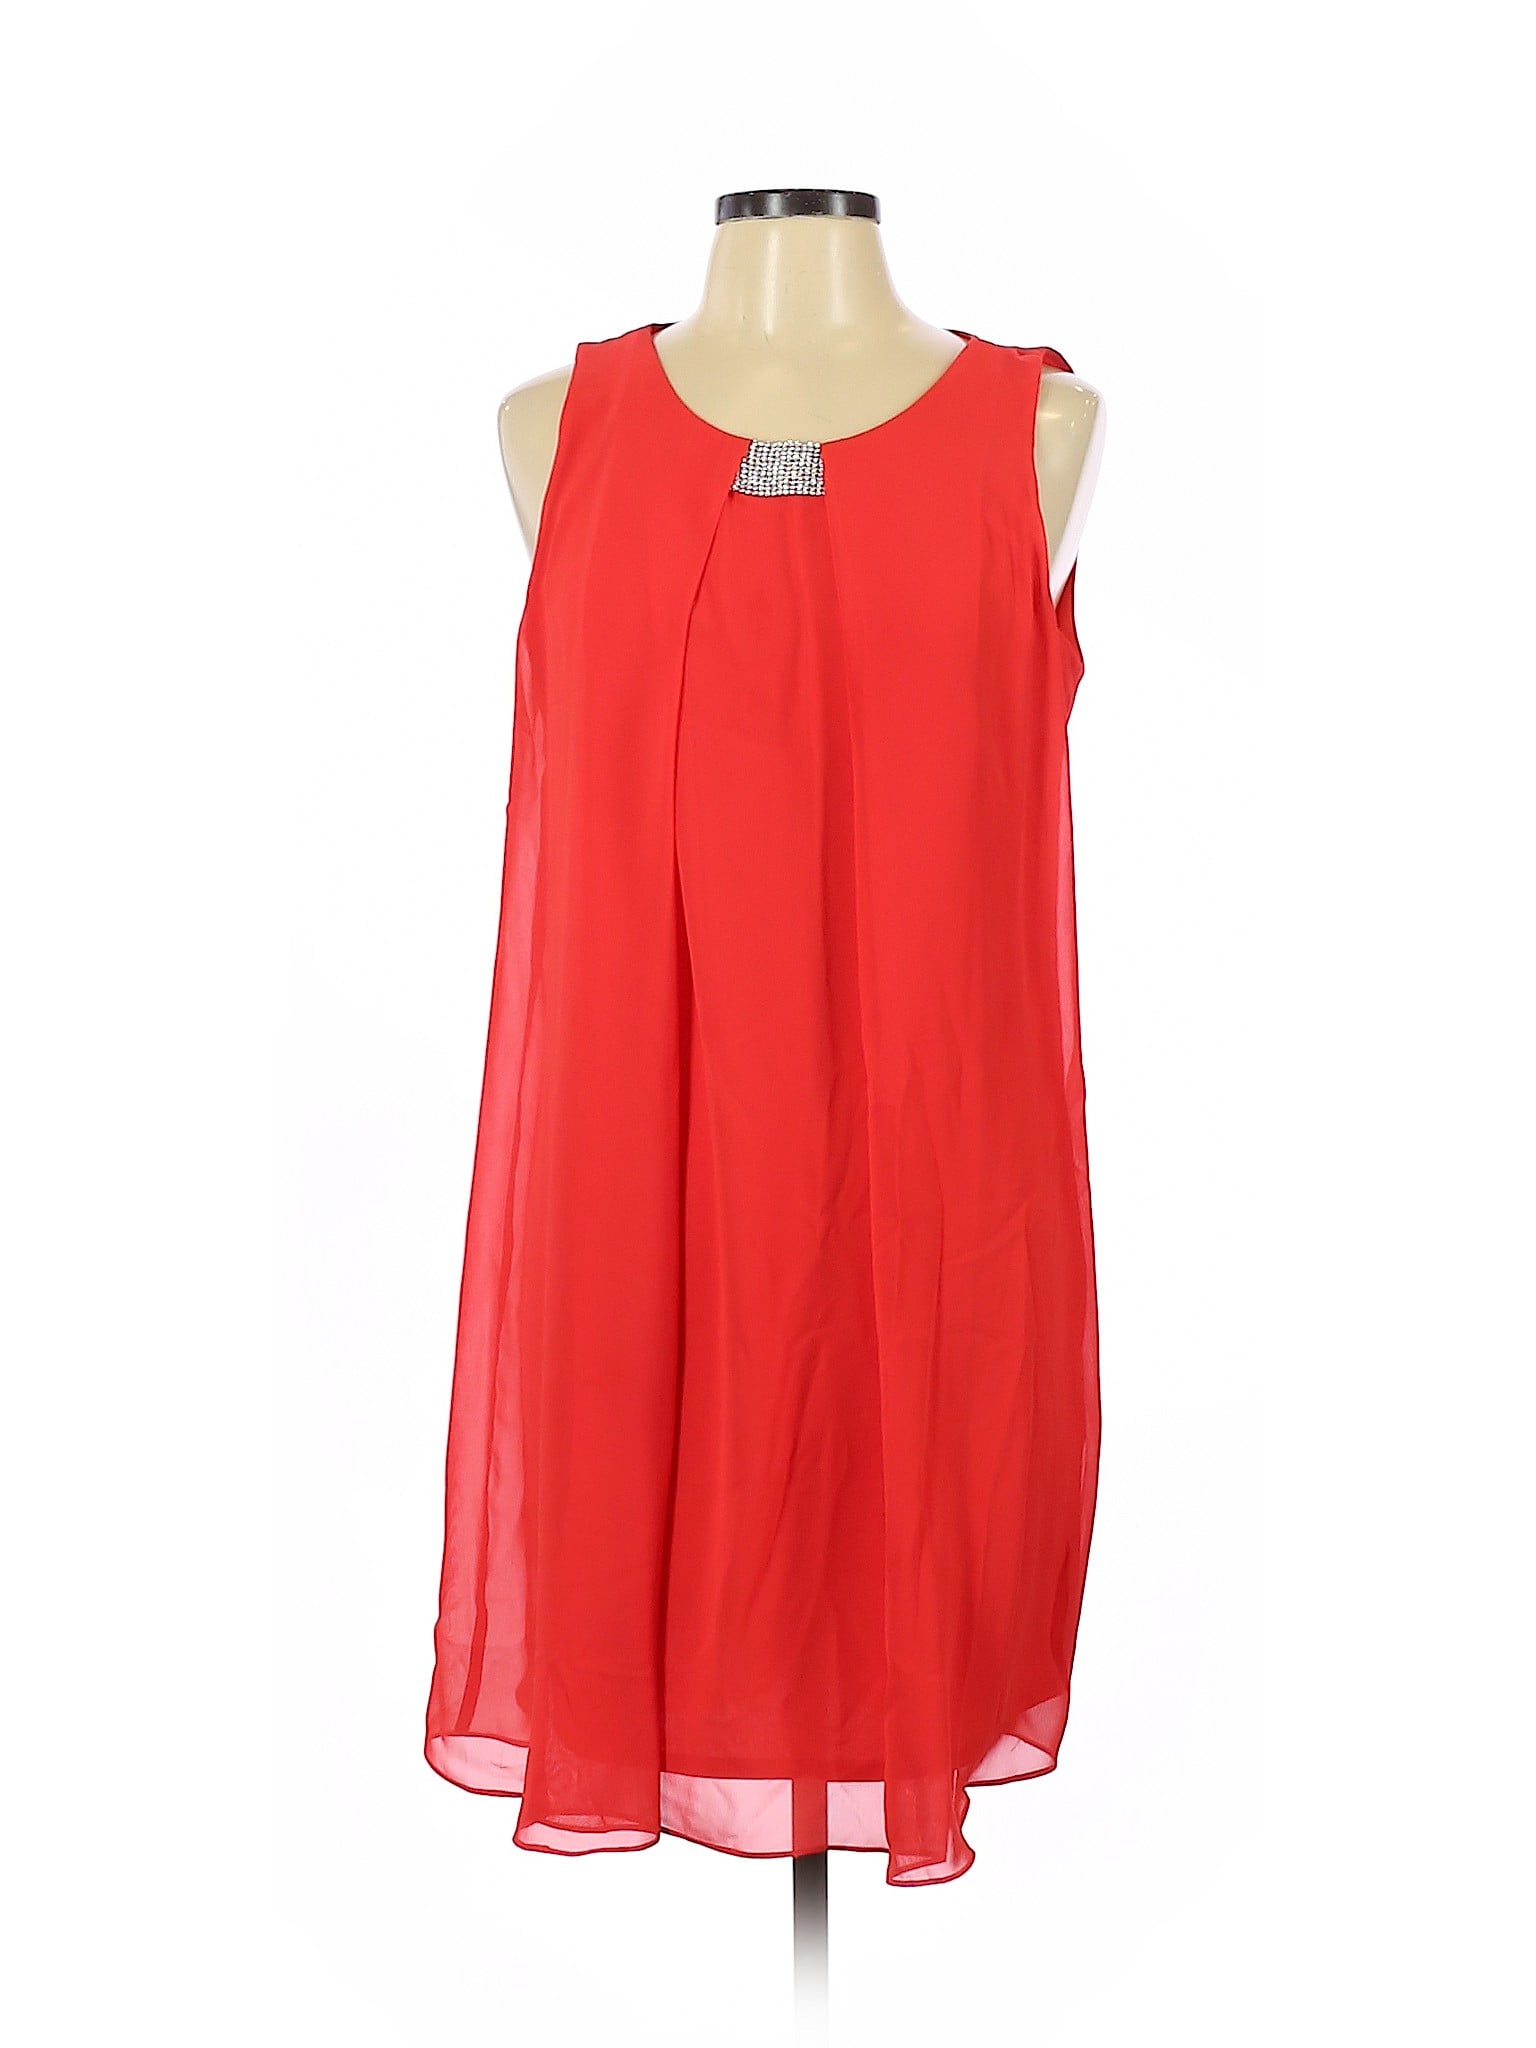 dressbarn - Pre-Owned DressBarn Women's Size 10 Casual Dress - Walmart ...